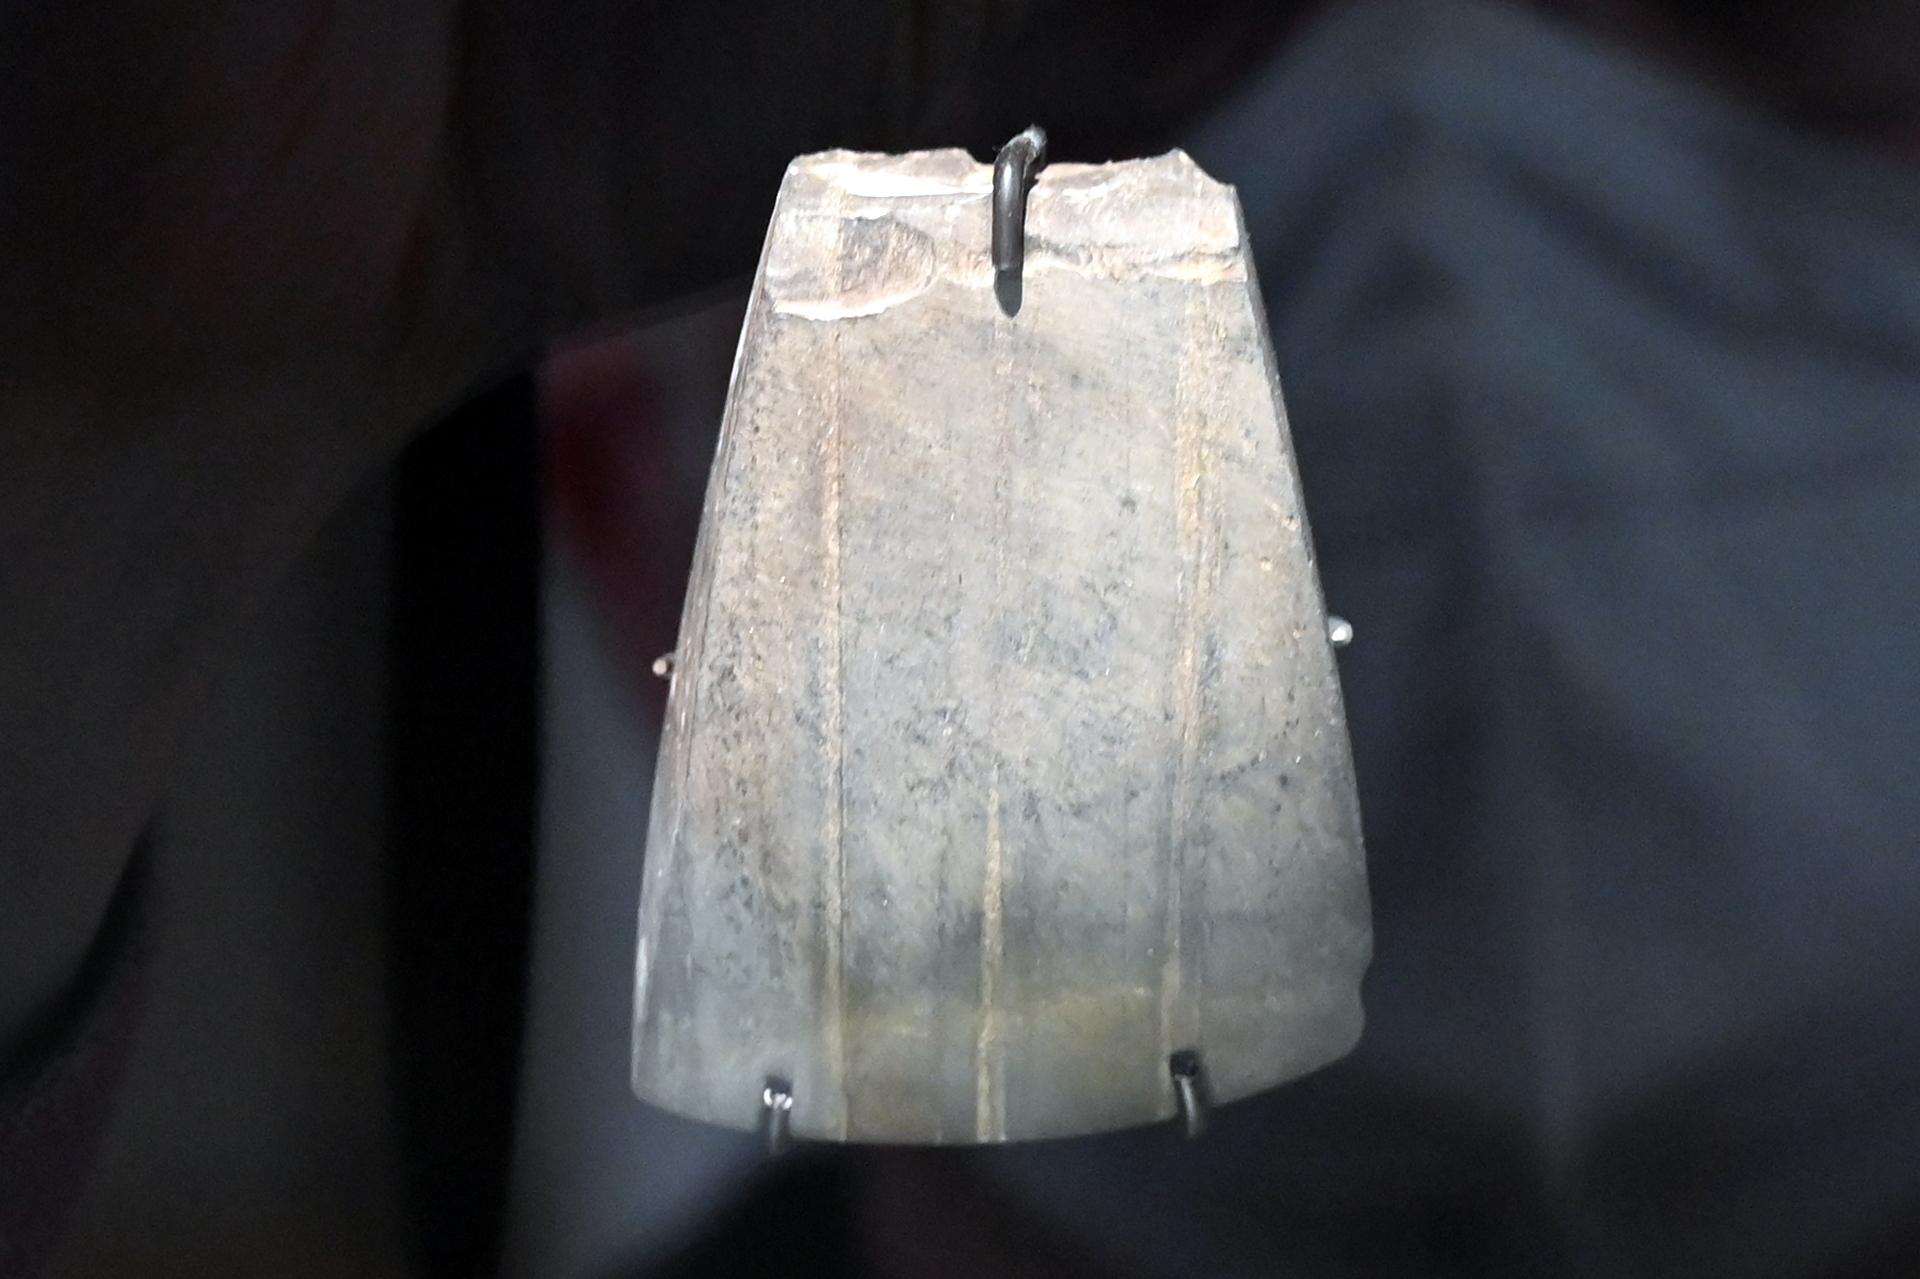 Breite Dechselklinge, Neolithikum (Jungsteinzeit), 5500 - 1700 v. Chr., 3800 - 2800 v. Chr., Bild 1/3